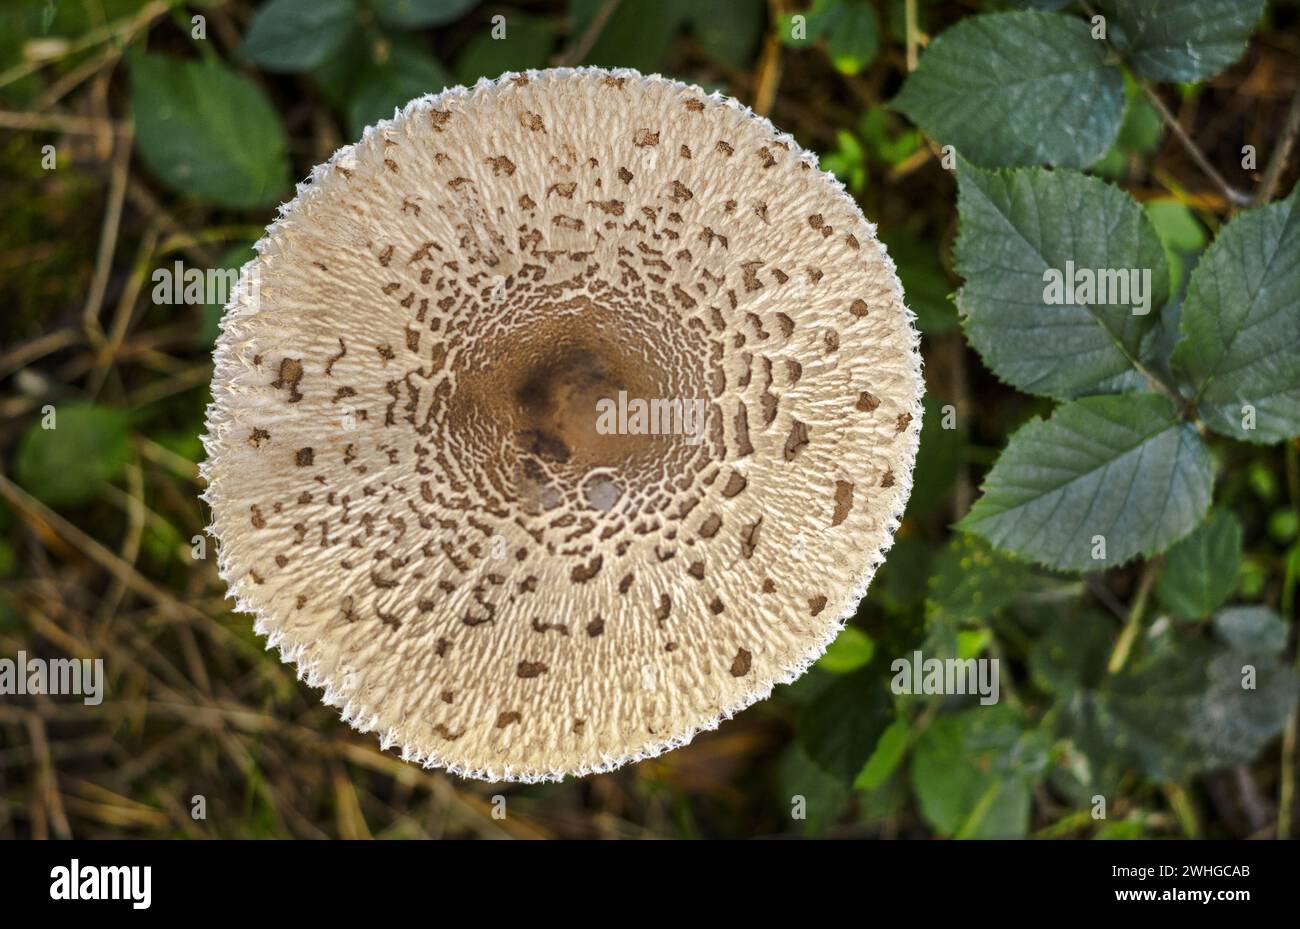 Fungo forestale â€“ fungo da ombrellone Foto Stock